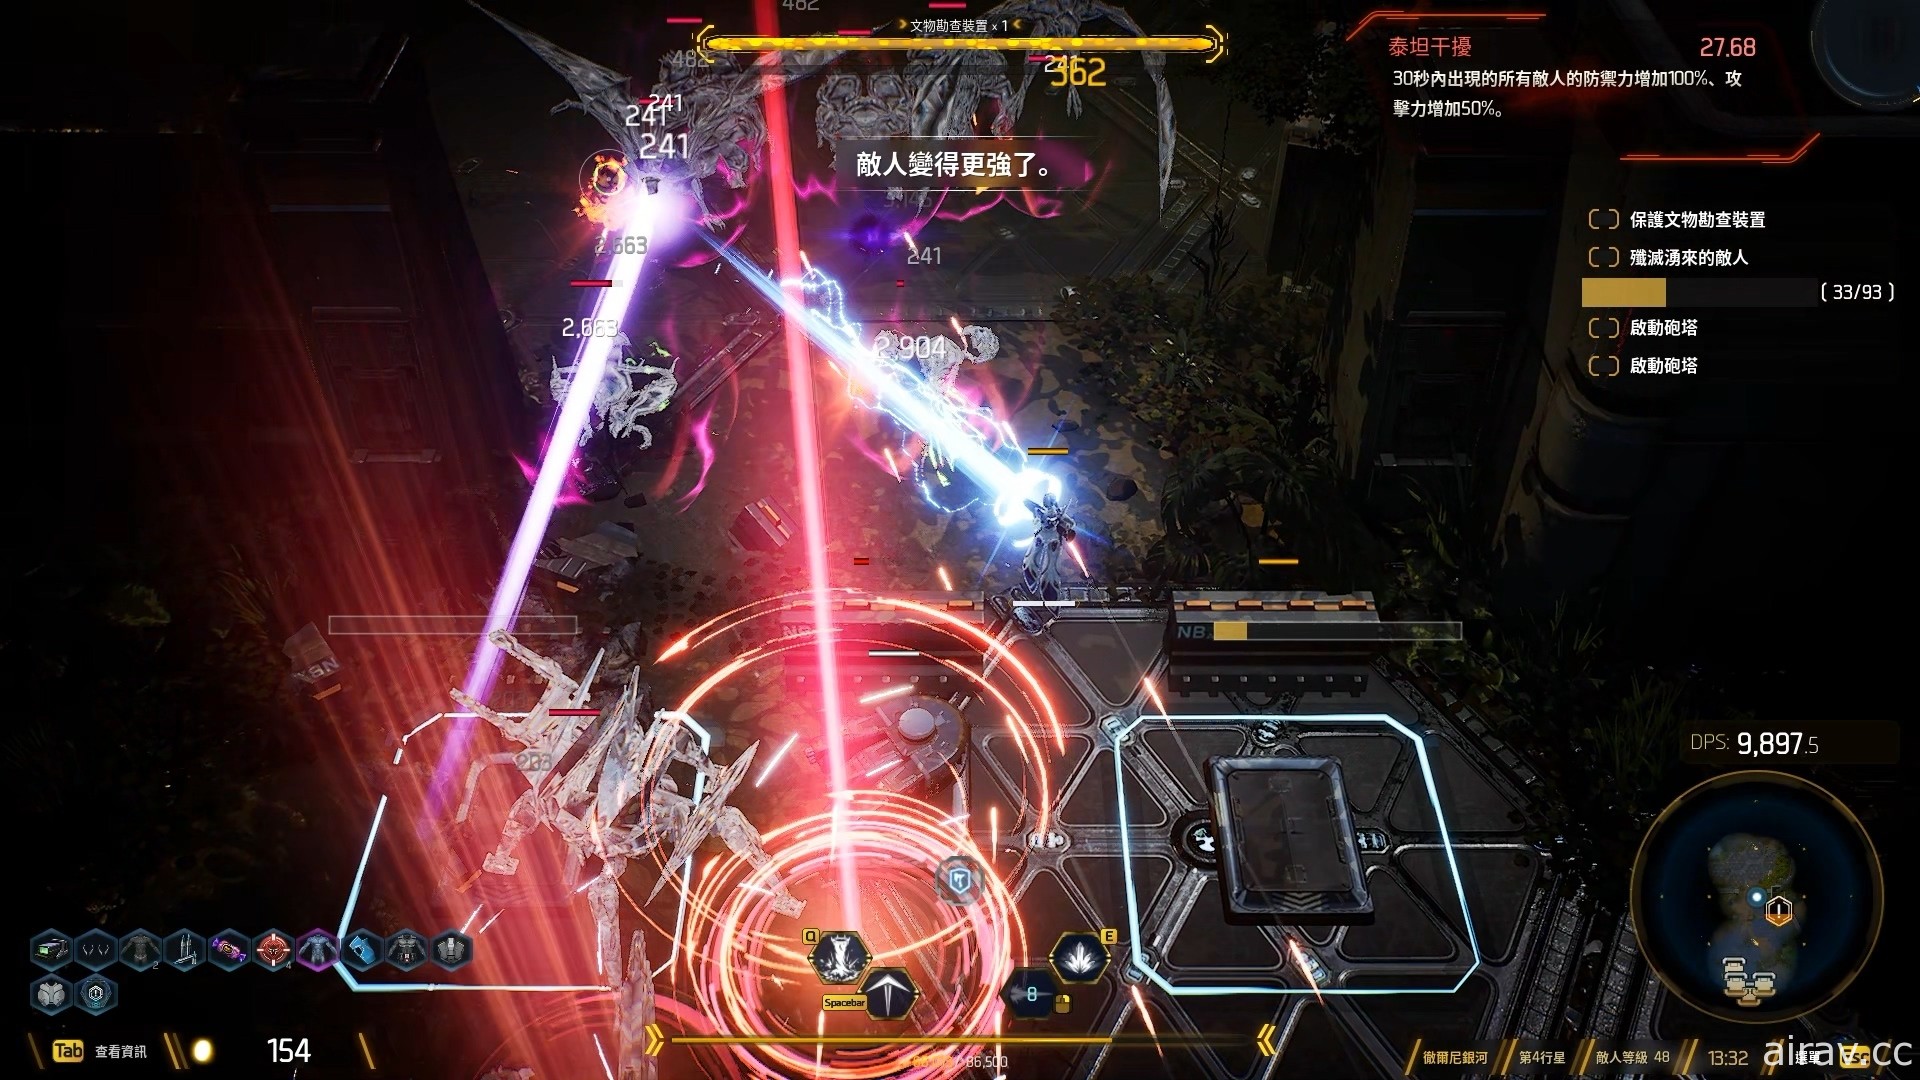 【試玩】快節奏科幻動作遊戲《ANVIL》帶來 Roguelike 俯視角射擊新體驗